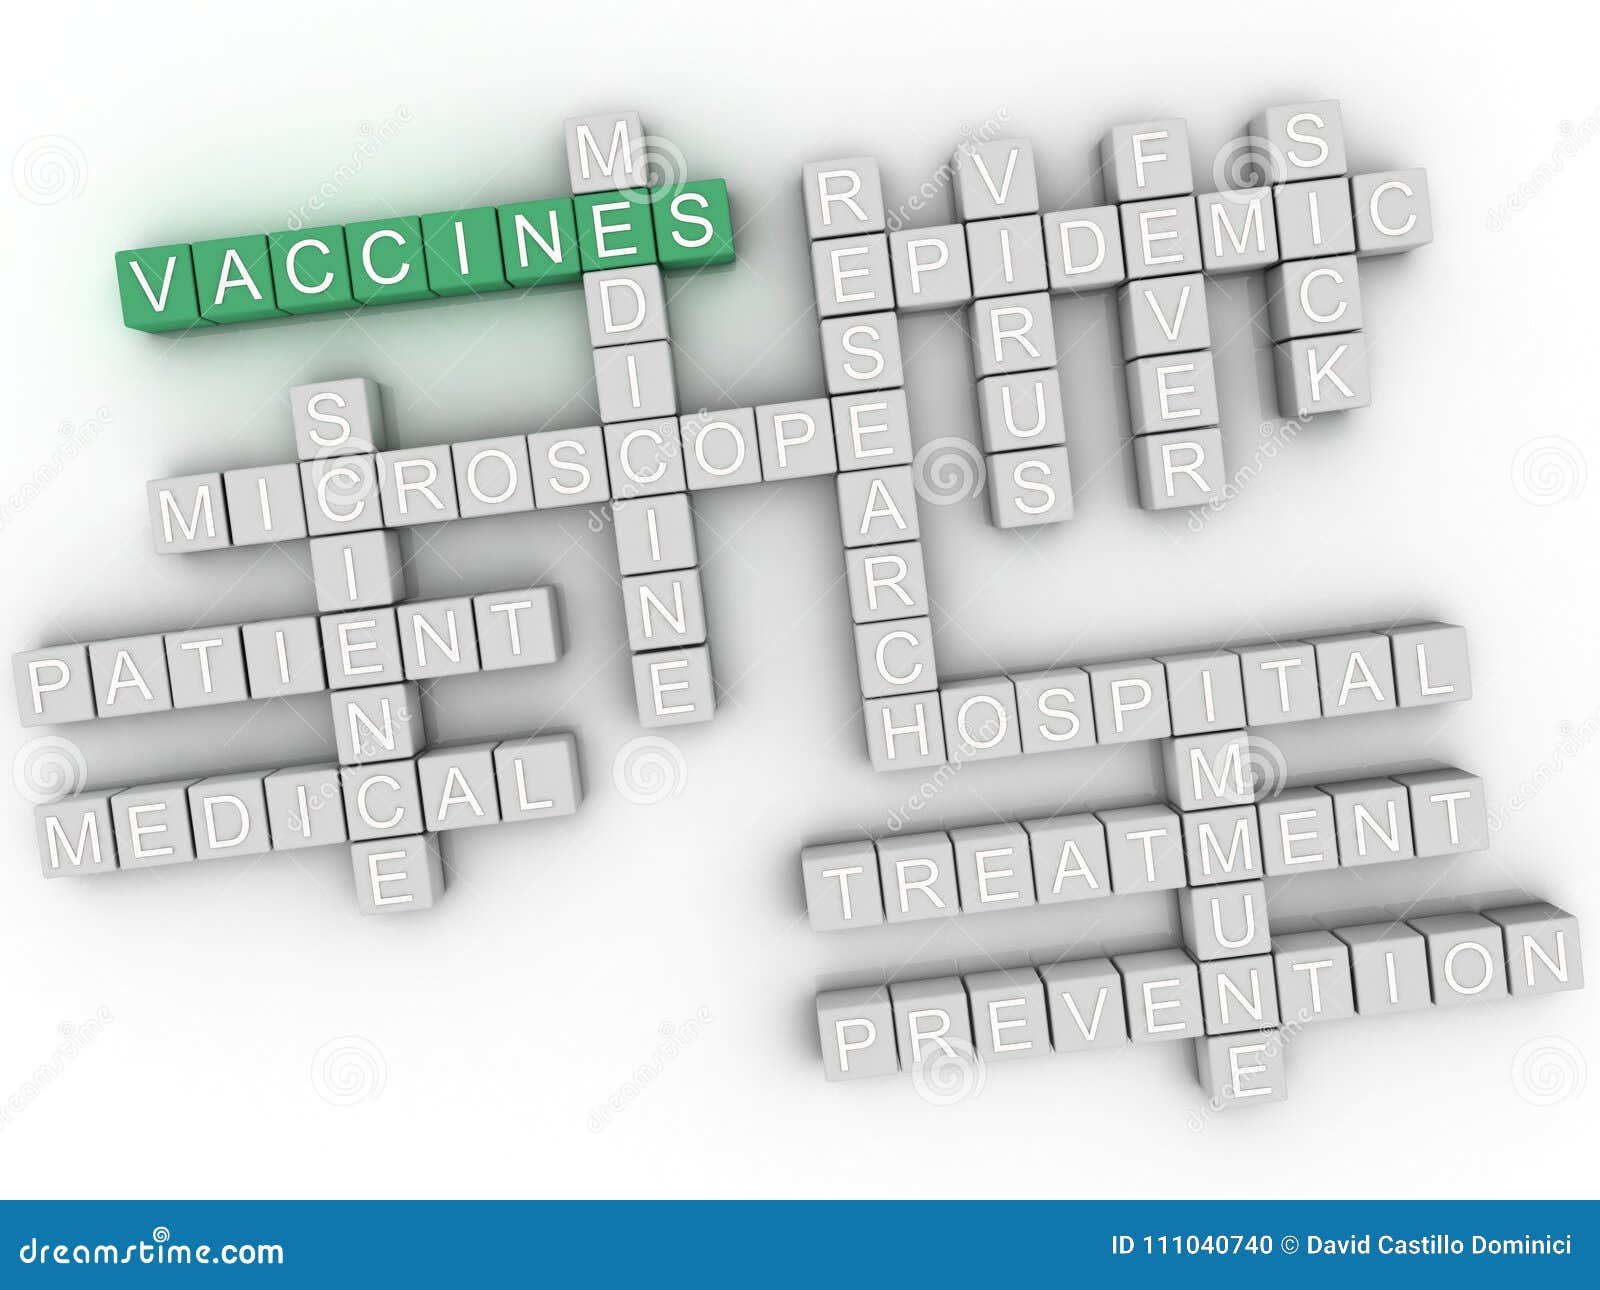 3d imagen vaccine, word cloud concept.